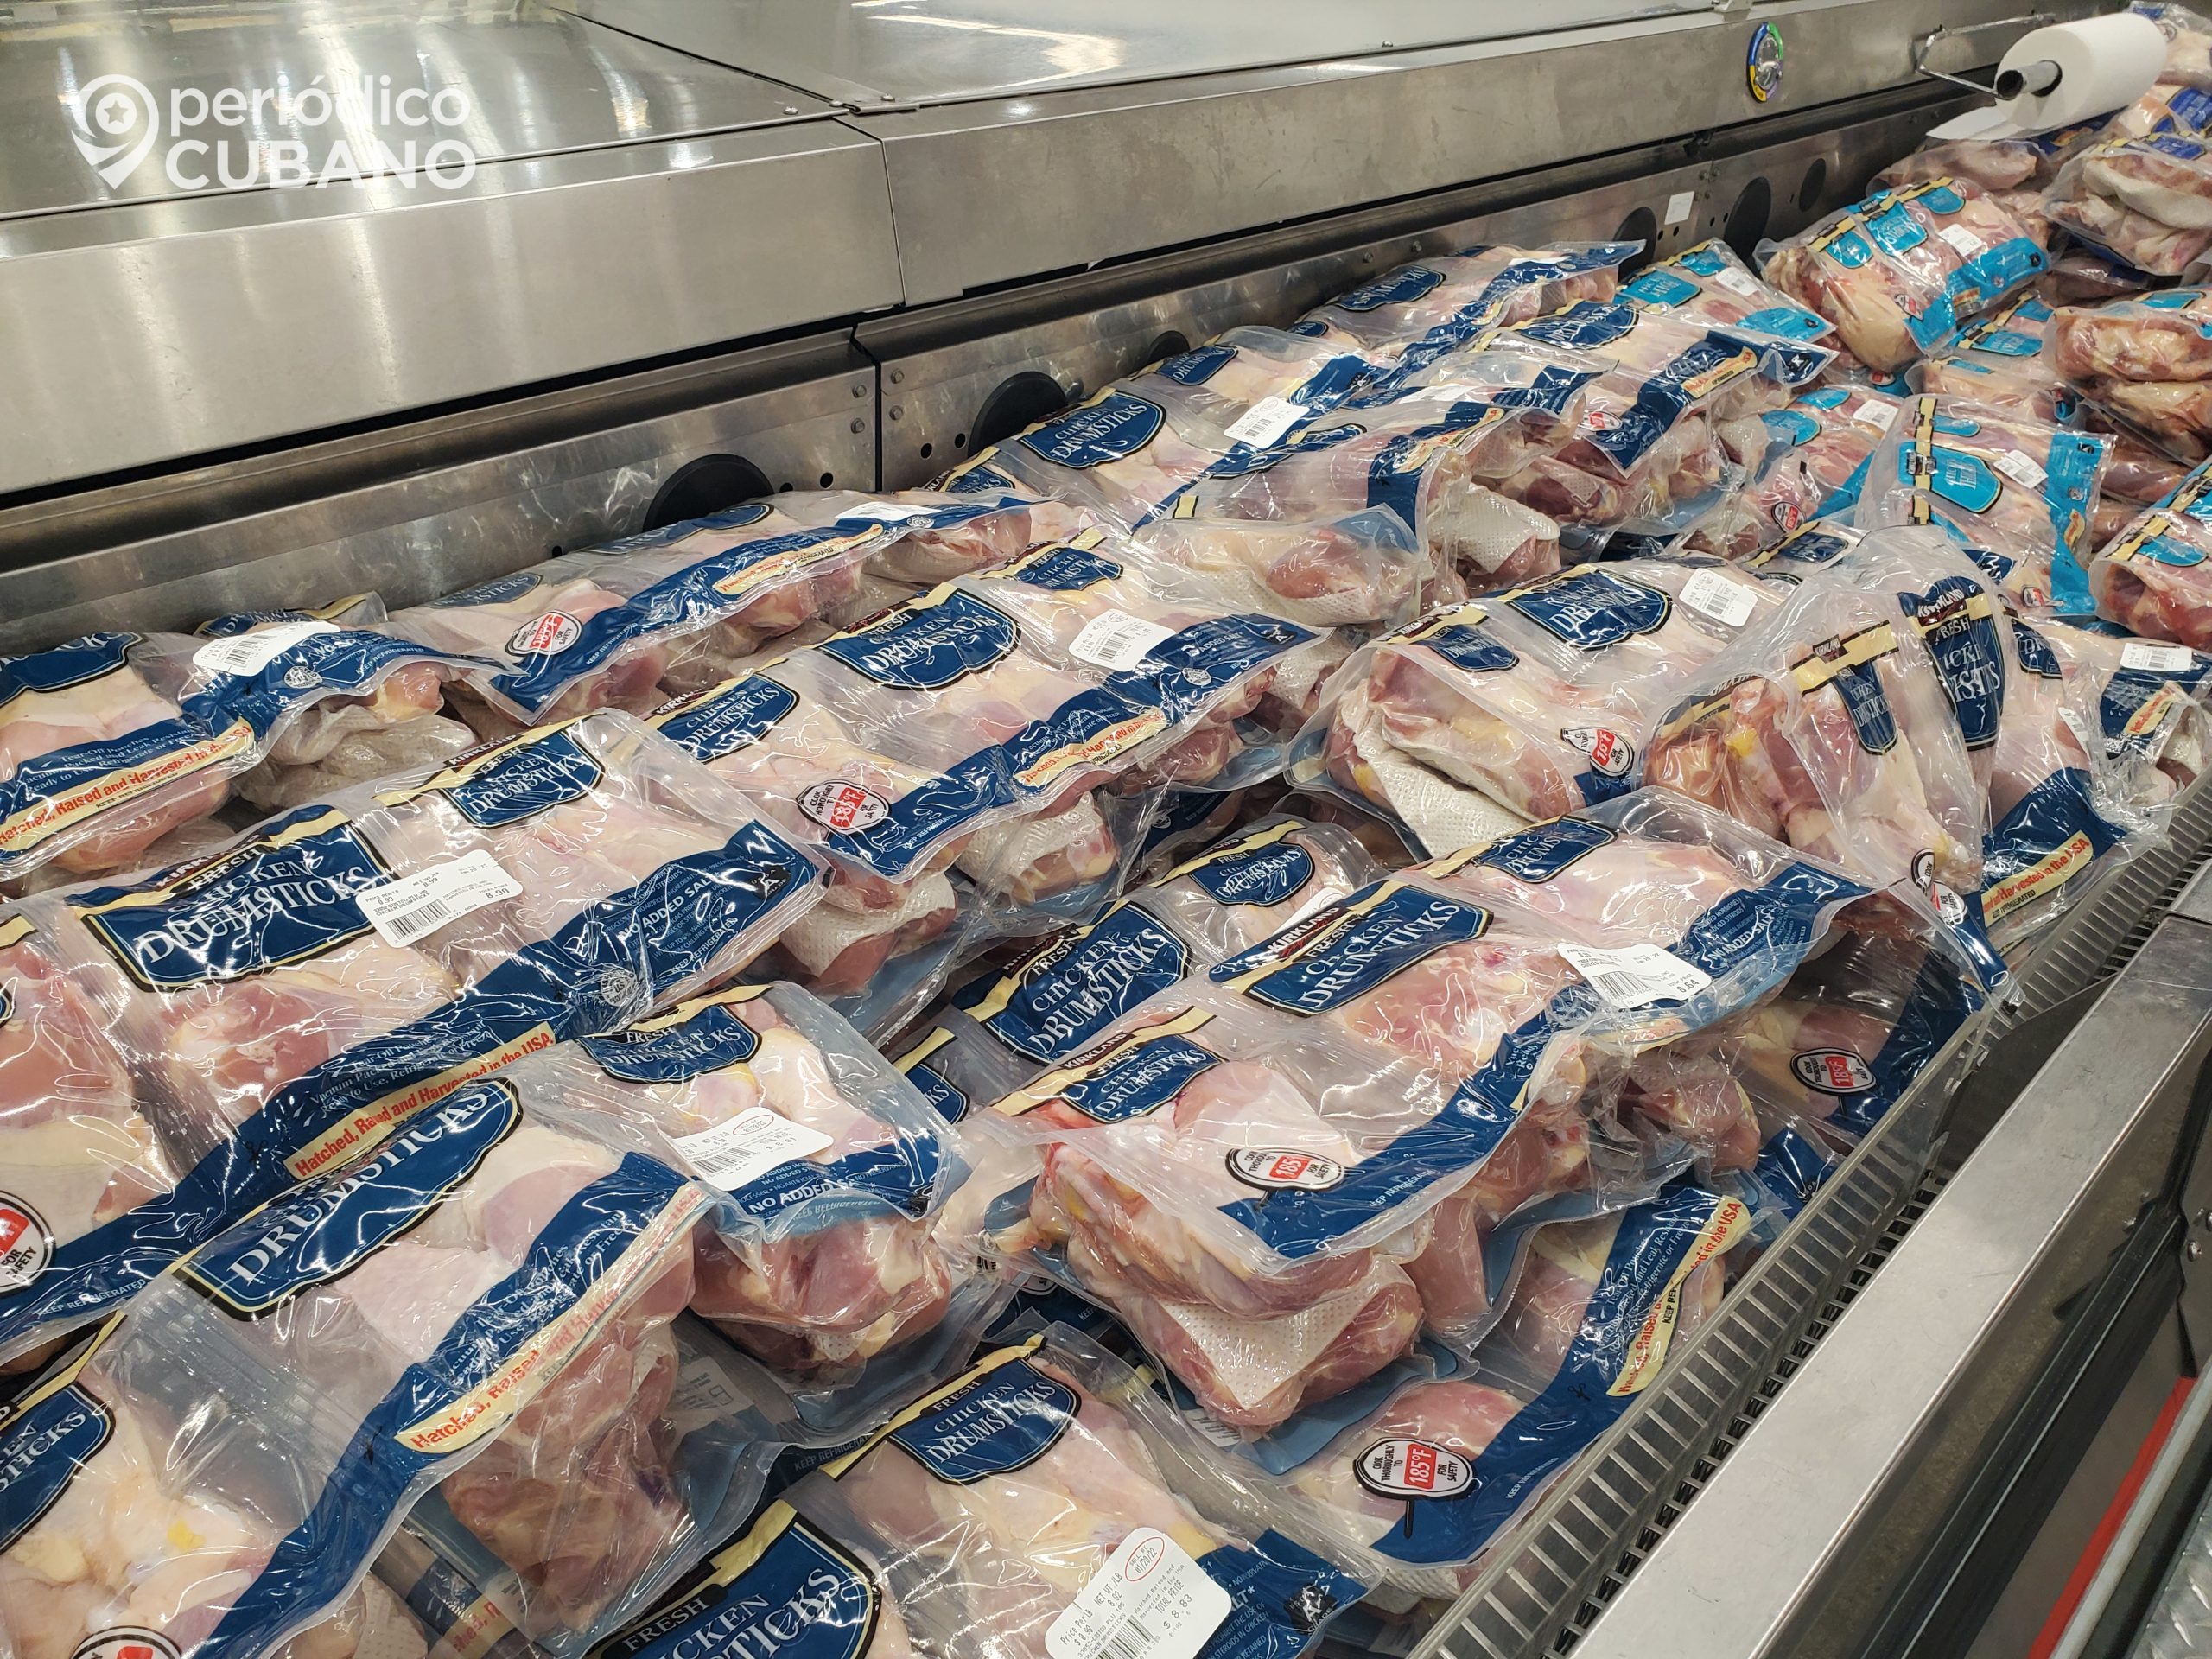 Descienden en más de un tercio las exportaciones de pollo estadounidense en Cuba durante octubre